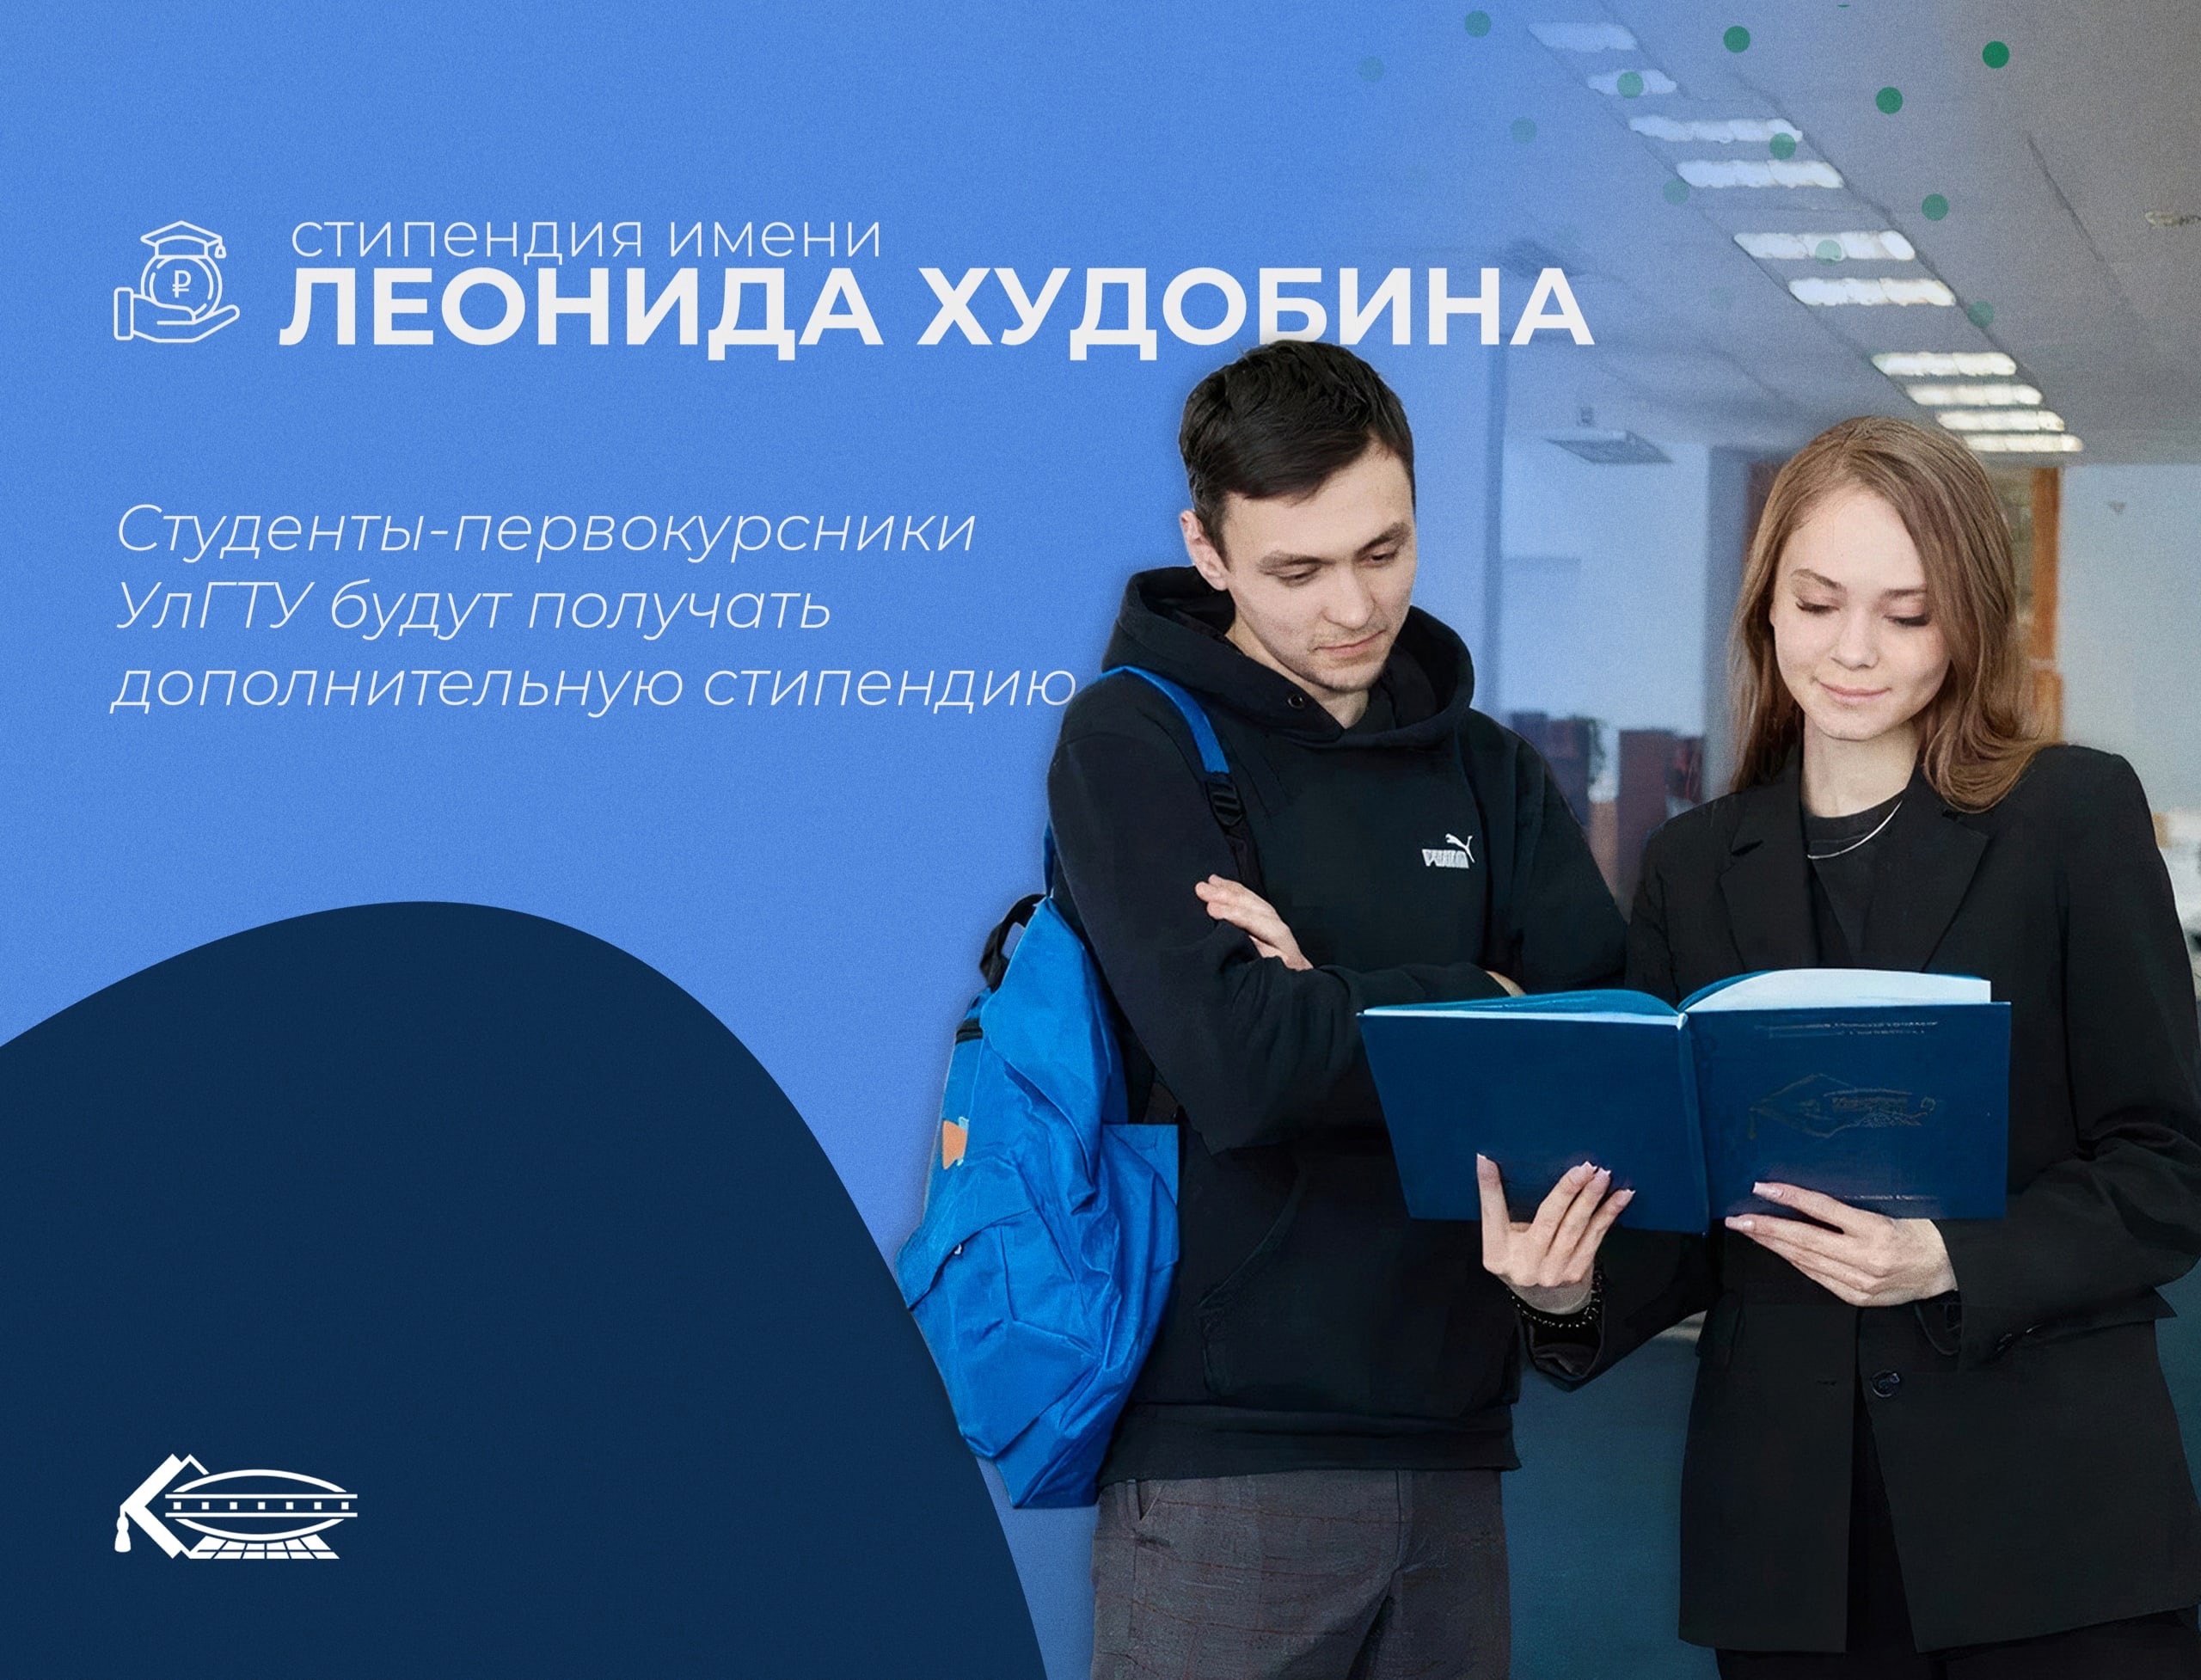 Первокурсники УлГТУ будут получать дополнительную стипендию имени Леонида Худобина